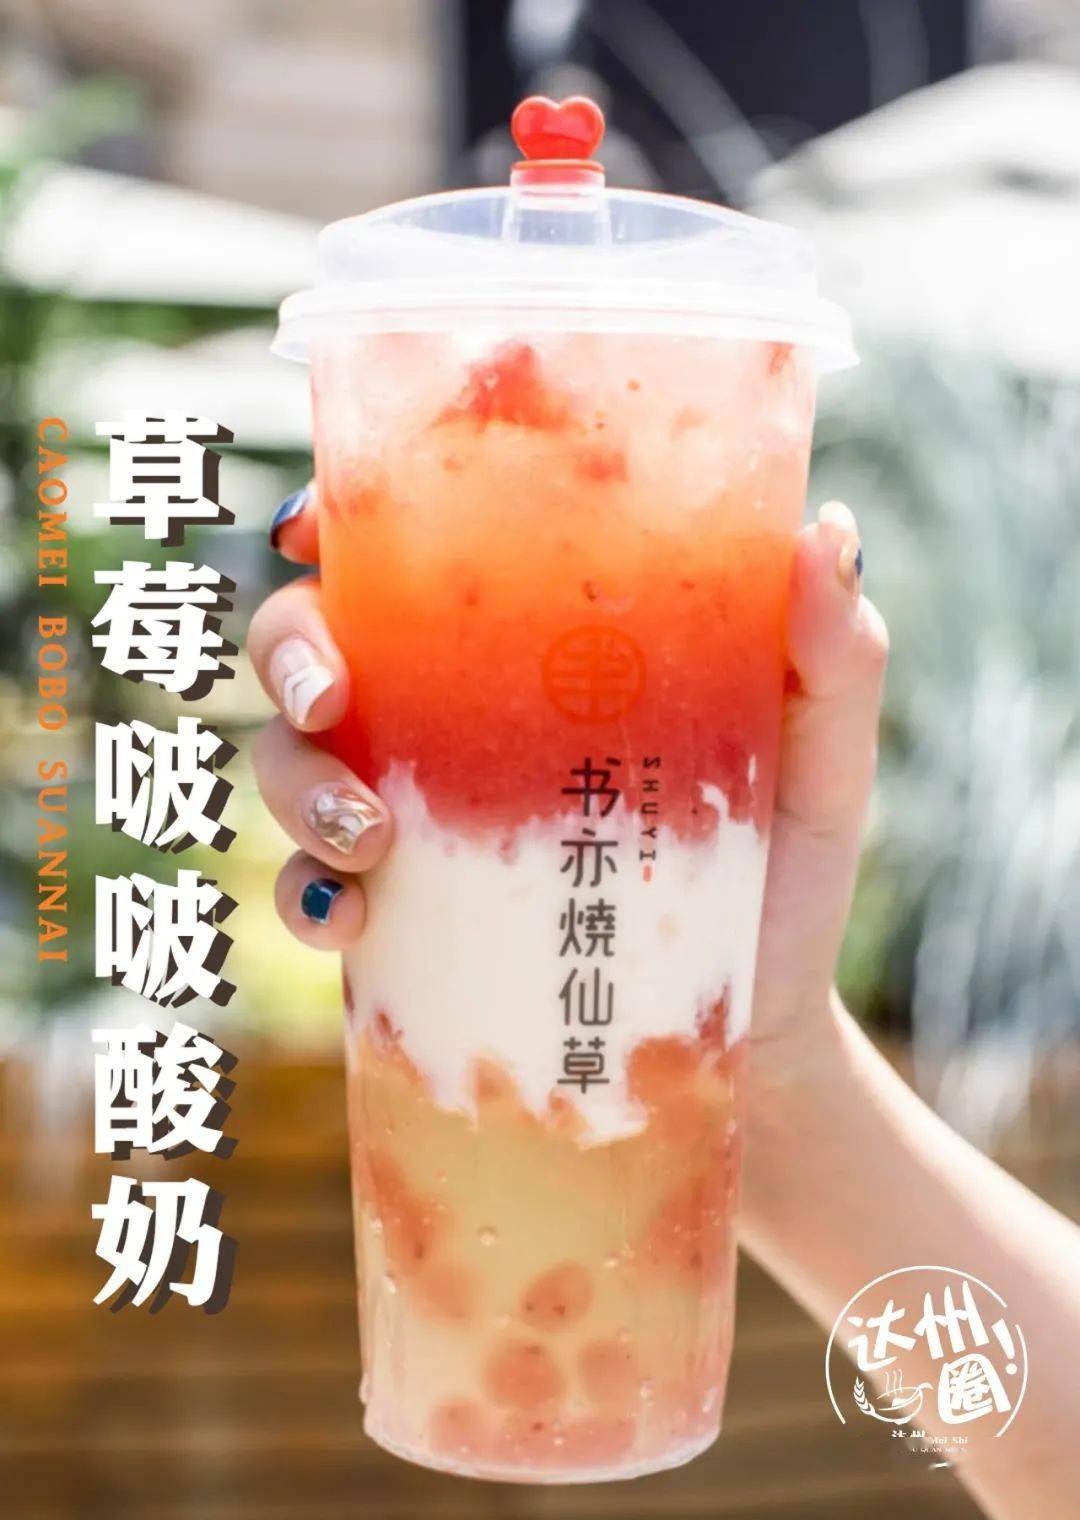 caomei bobo suanani草莓啵啵酸奶喝光后再用勺子把底料吃掉,超满足!